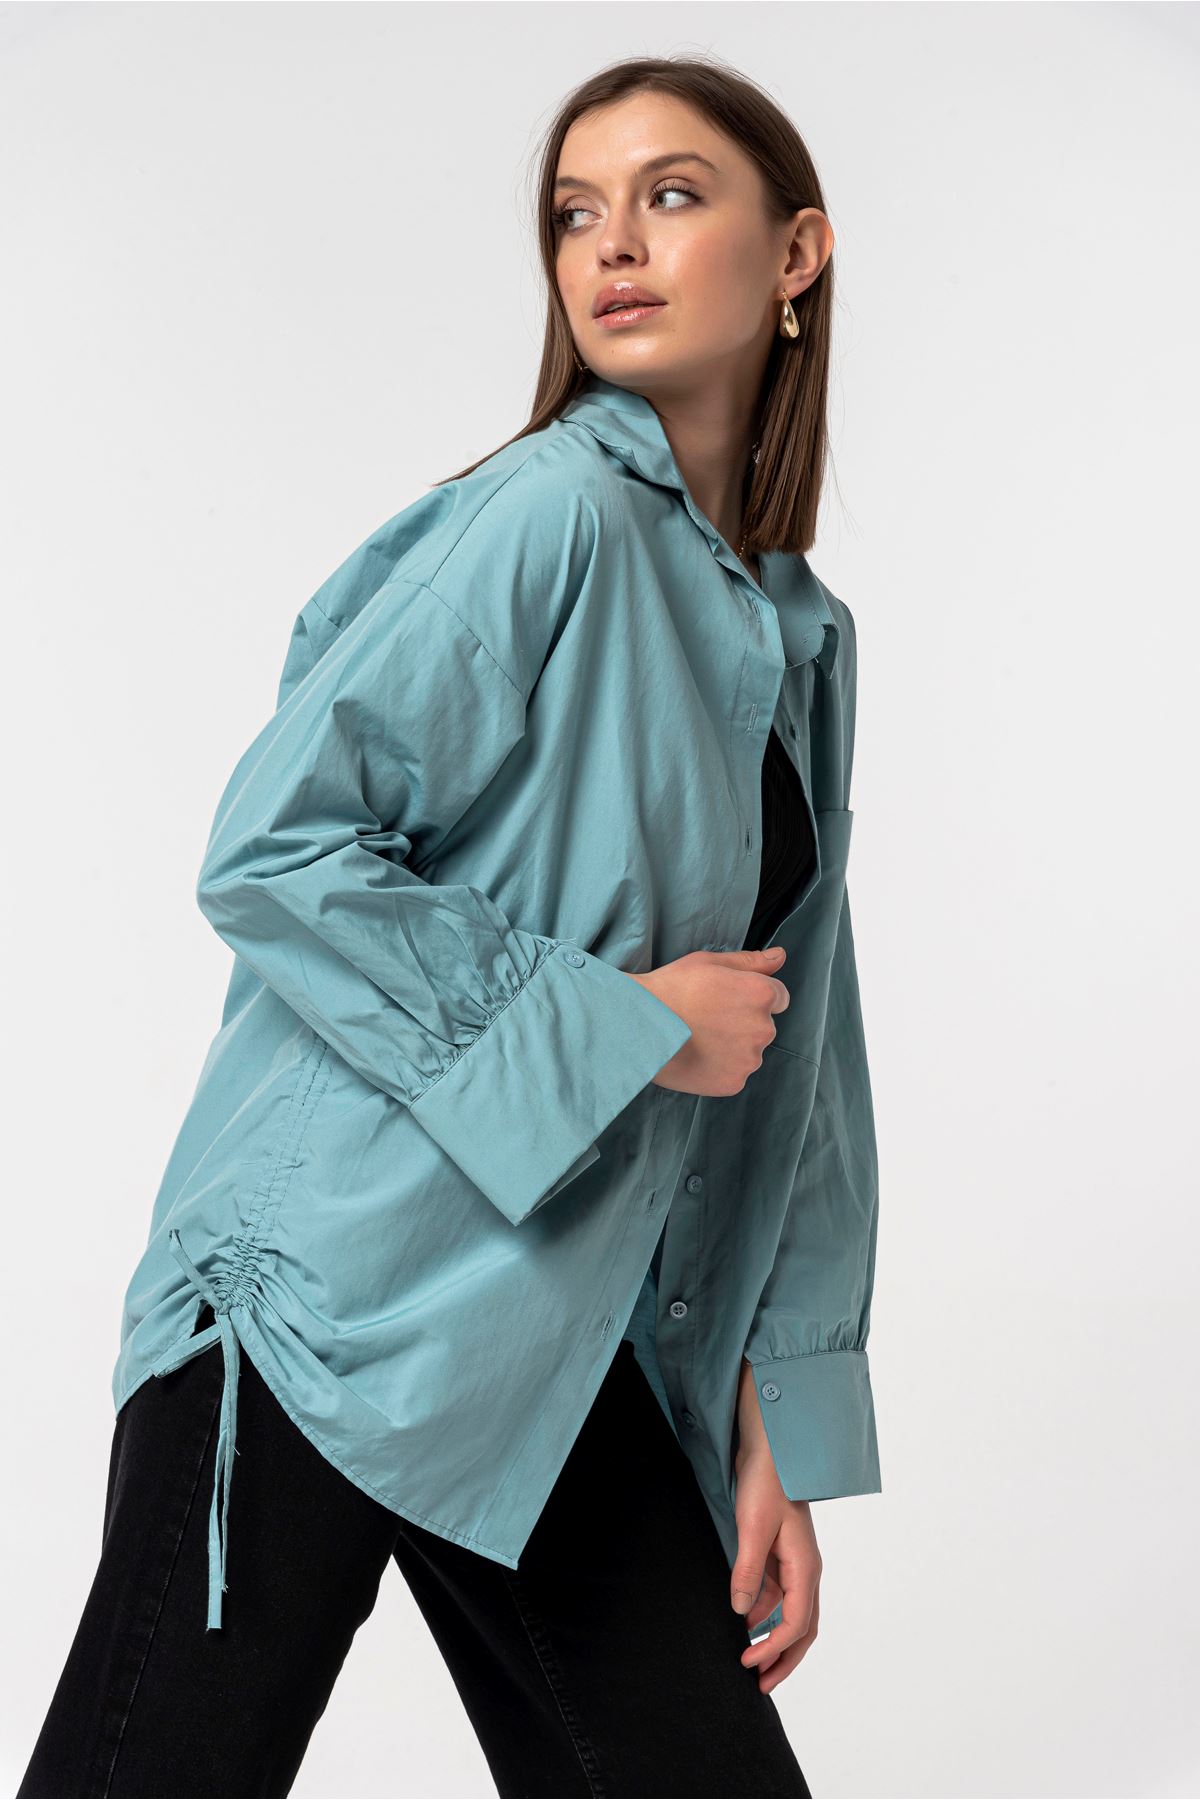 Soft Fabric Balloon Sleeve Below Hip Oversize Women'S Shirt - Mint